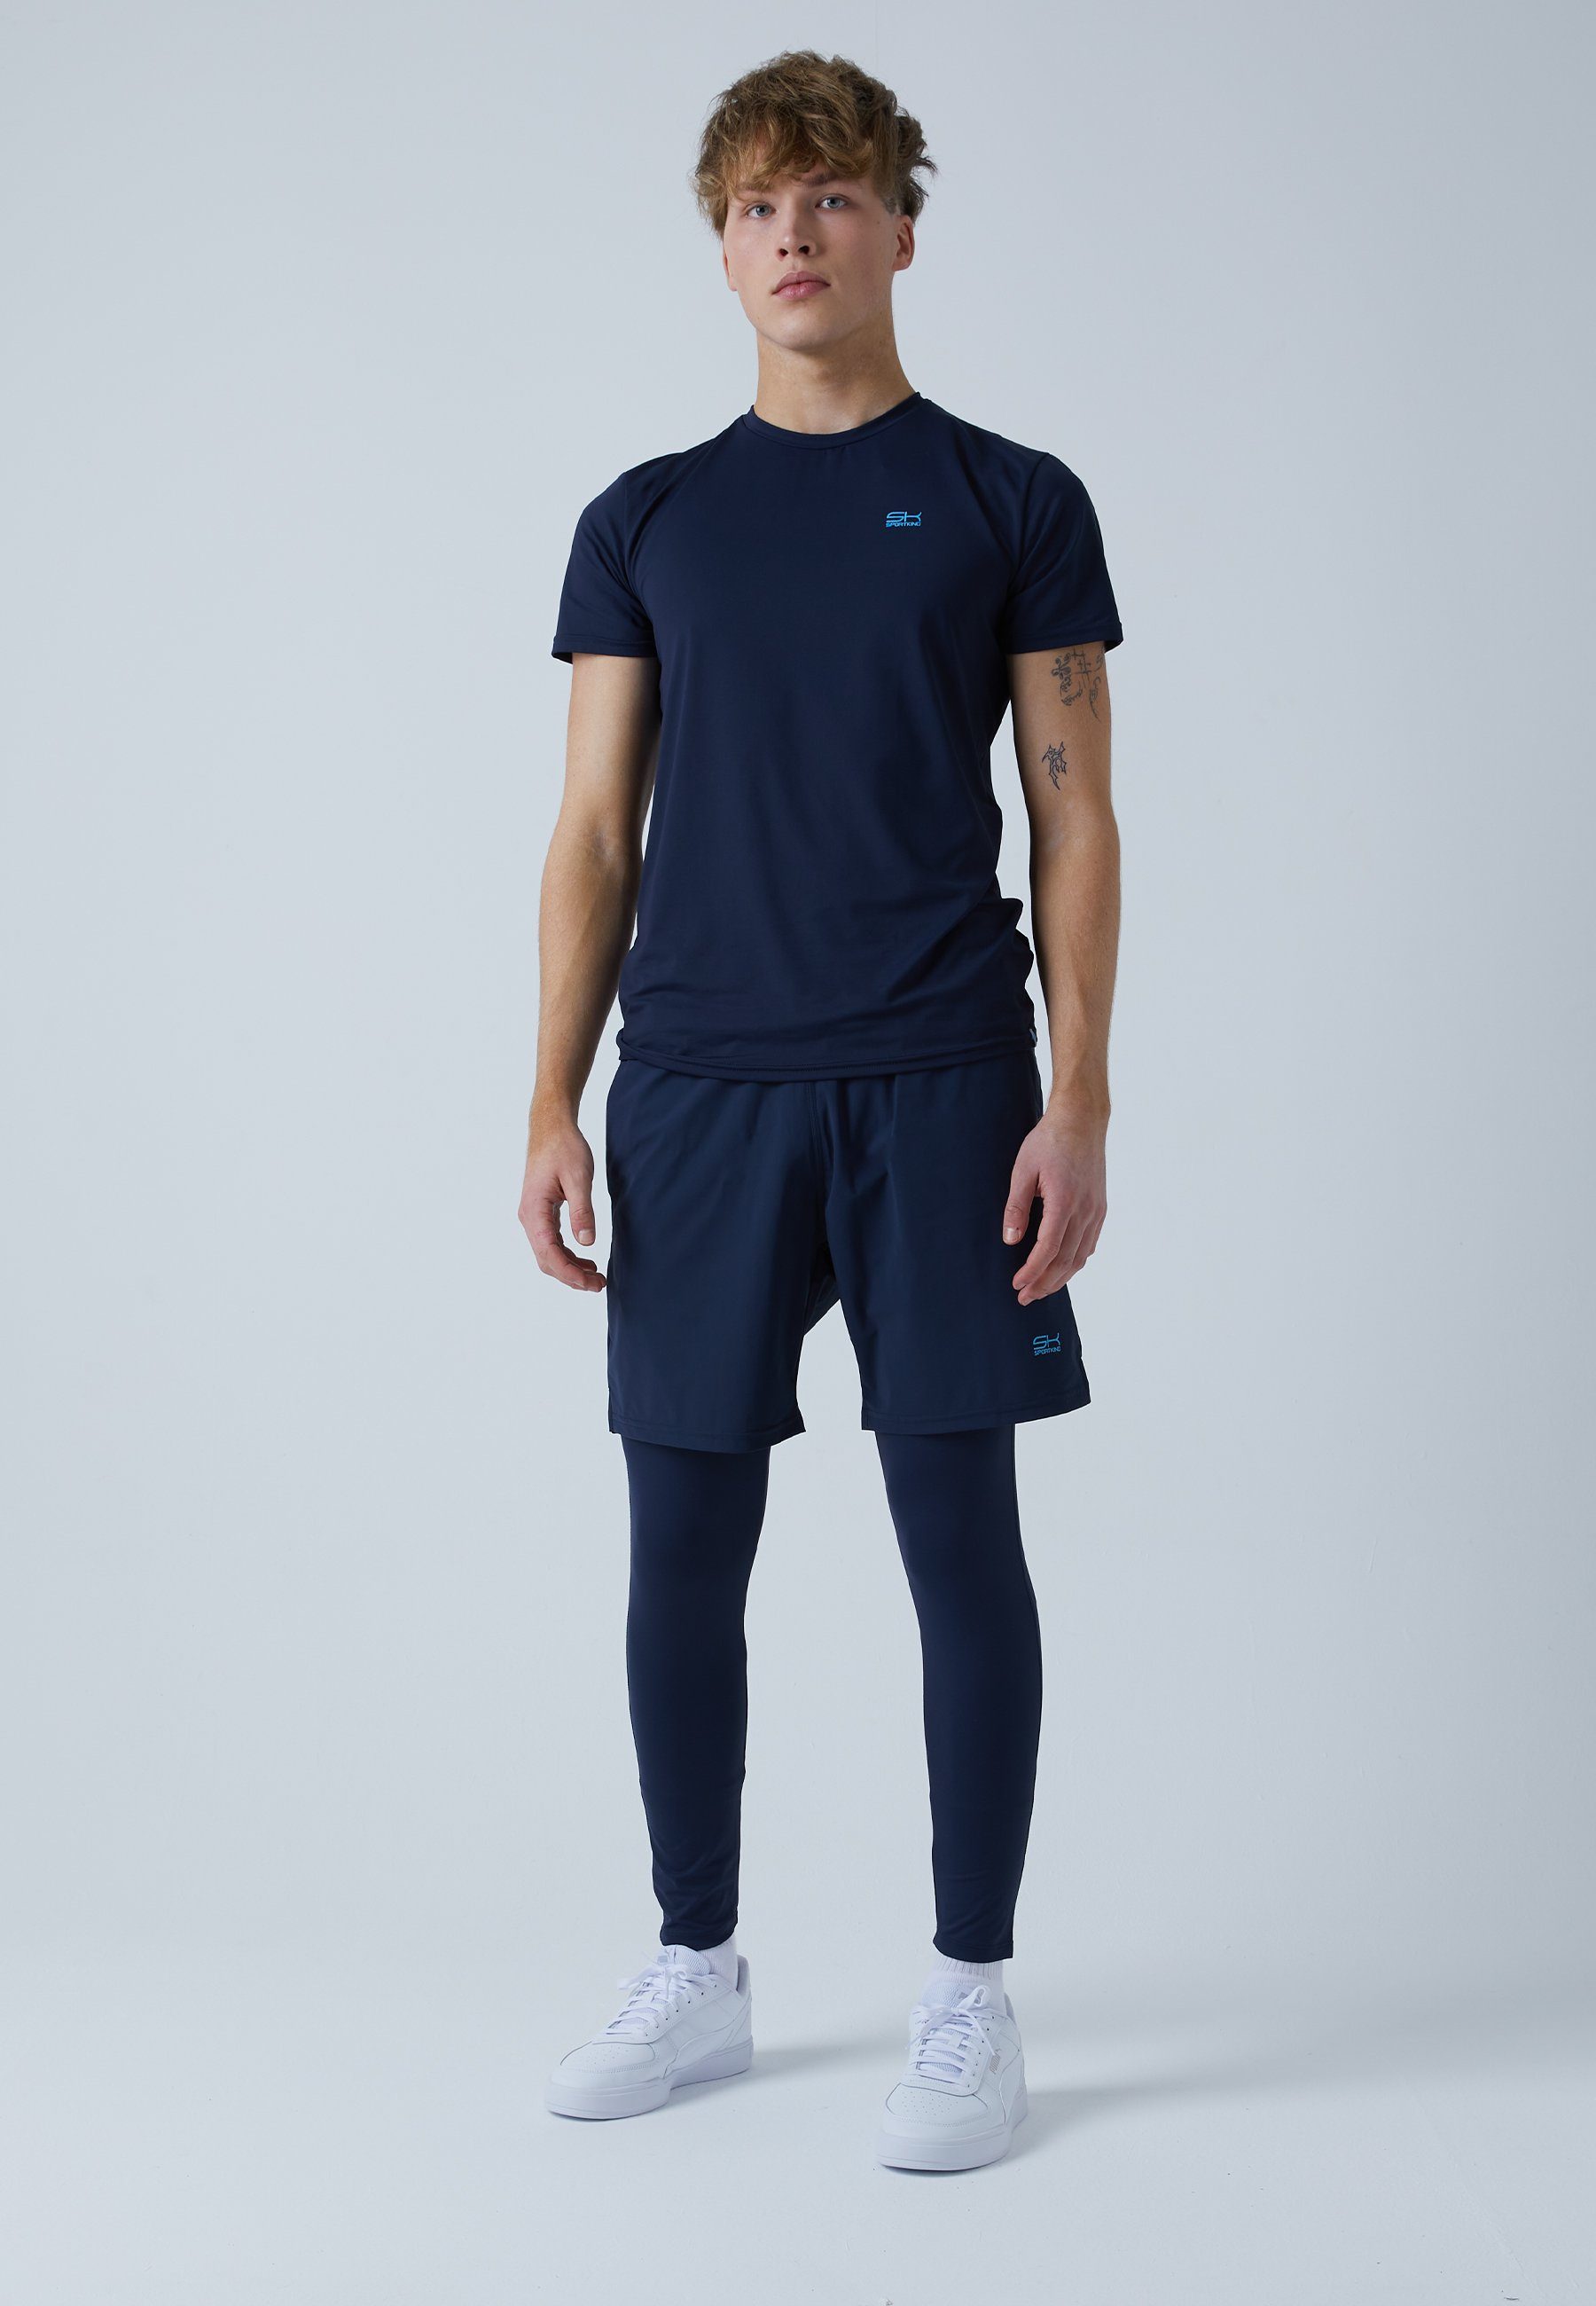 & Herren Sporthose mit Leggings Shorts Jungen navy 2-in-1 SPORTKIND blau